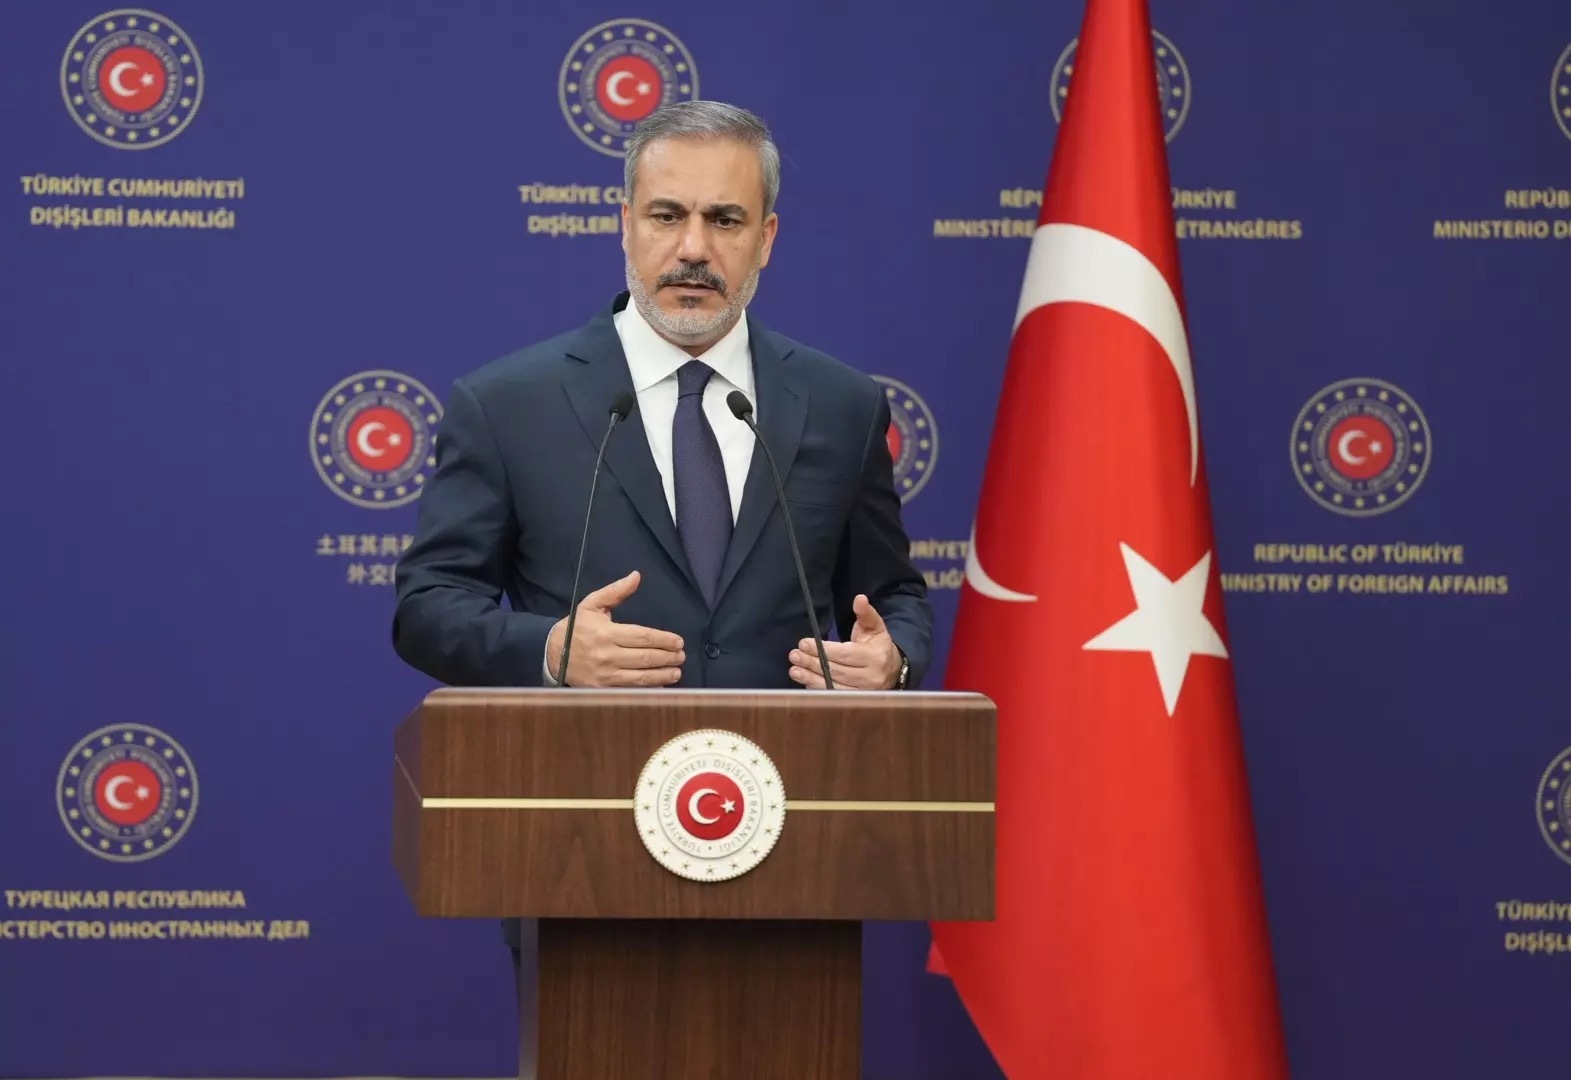 وزير الخارجية التركي يتحدث عن تغير ميزان القوى في المنطقة ضد تل أبيب وواشنطن ويحذر من حرب إقليمية